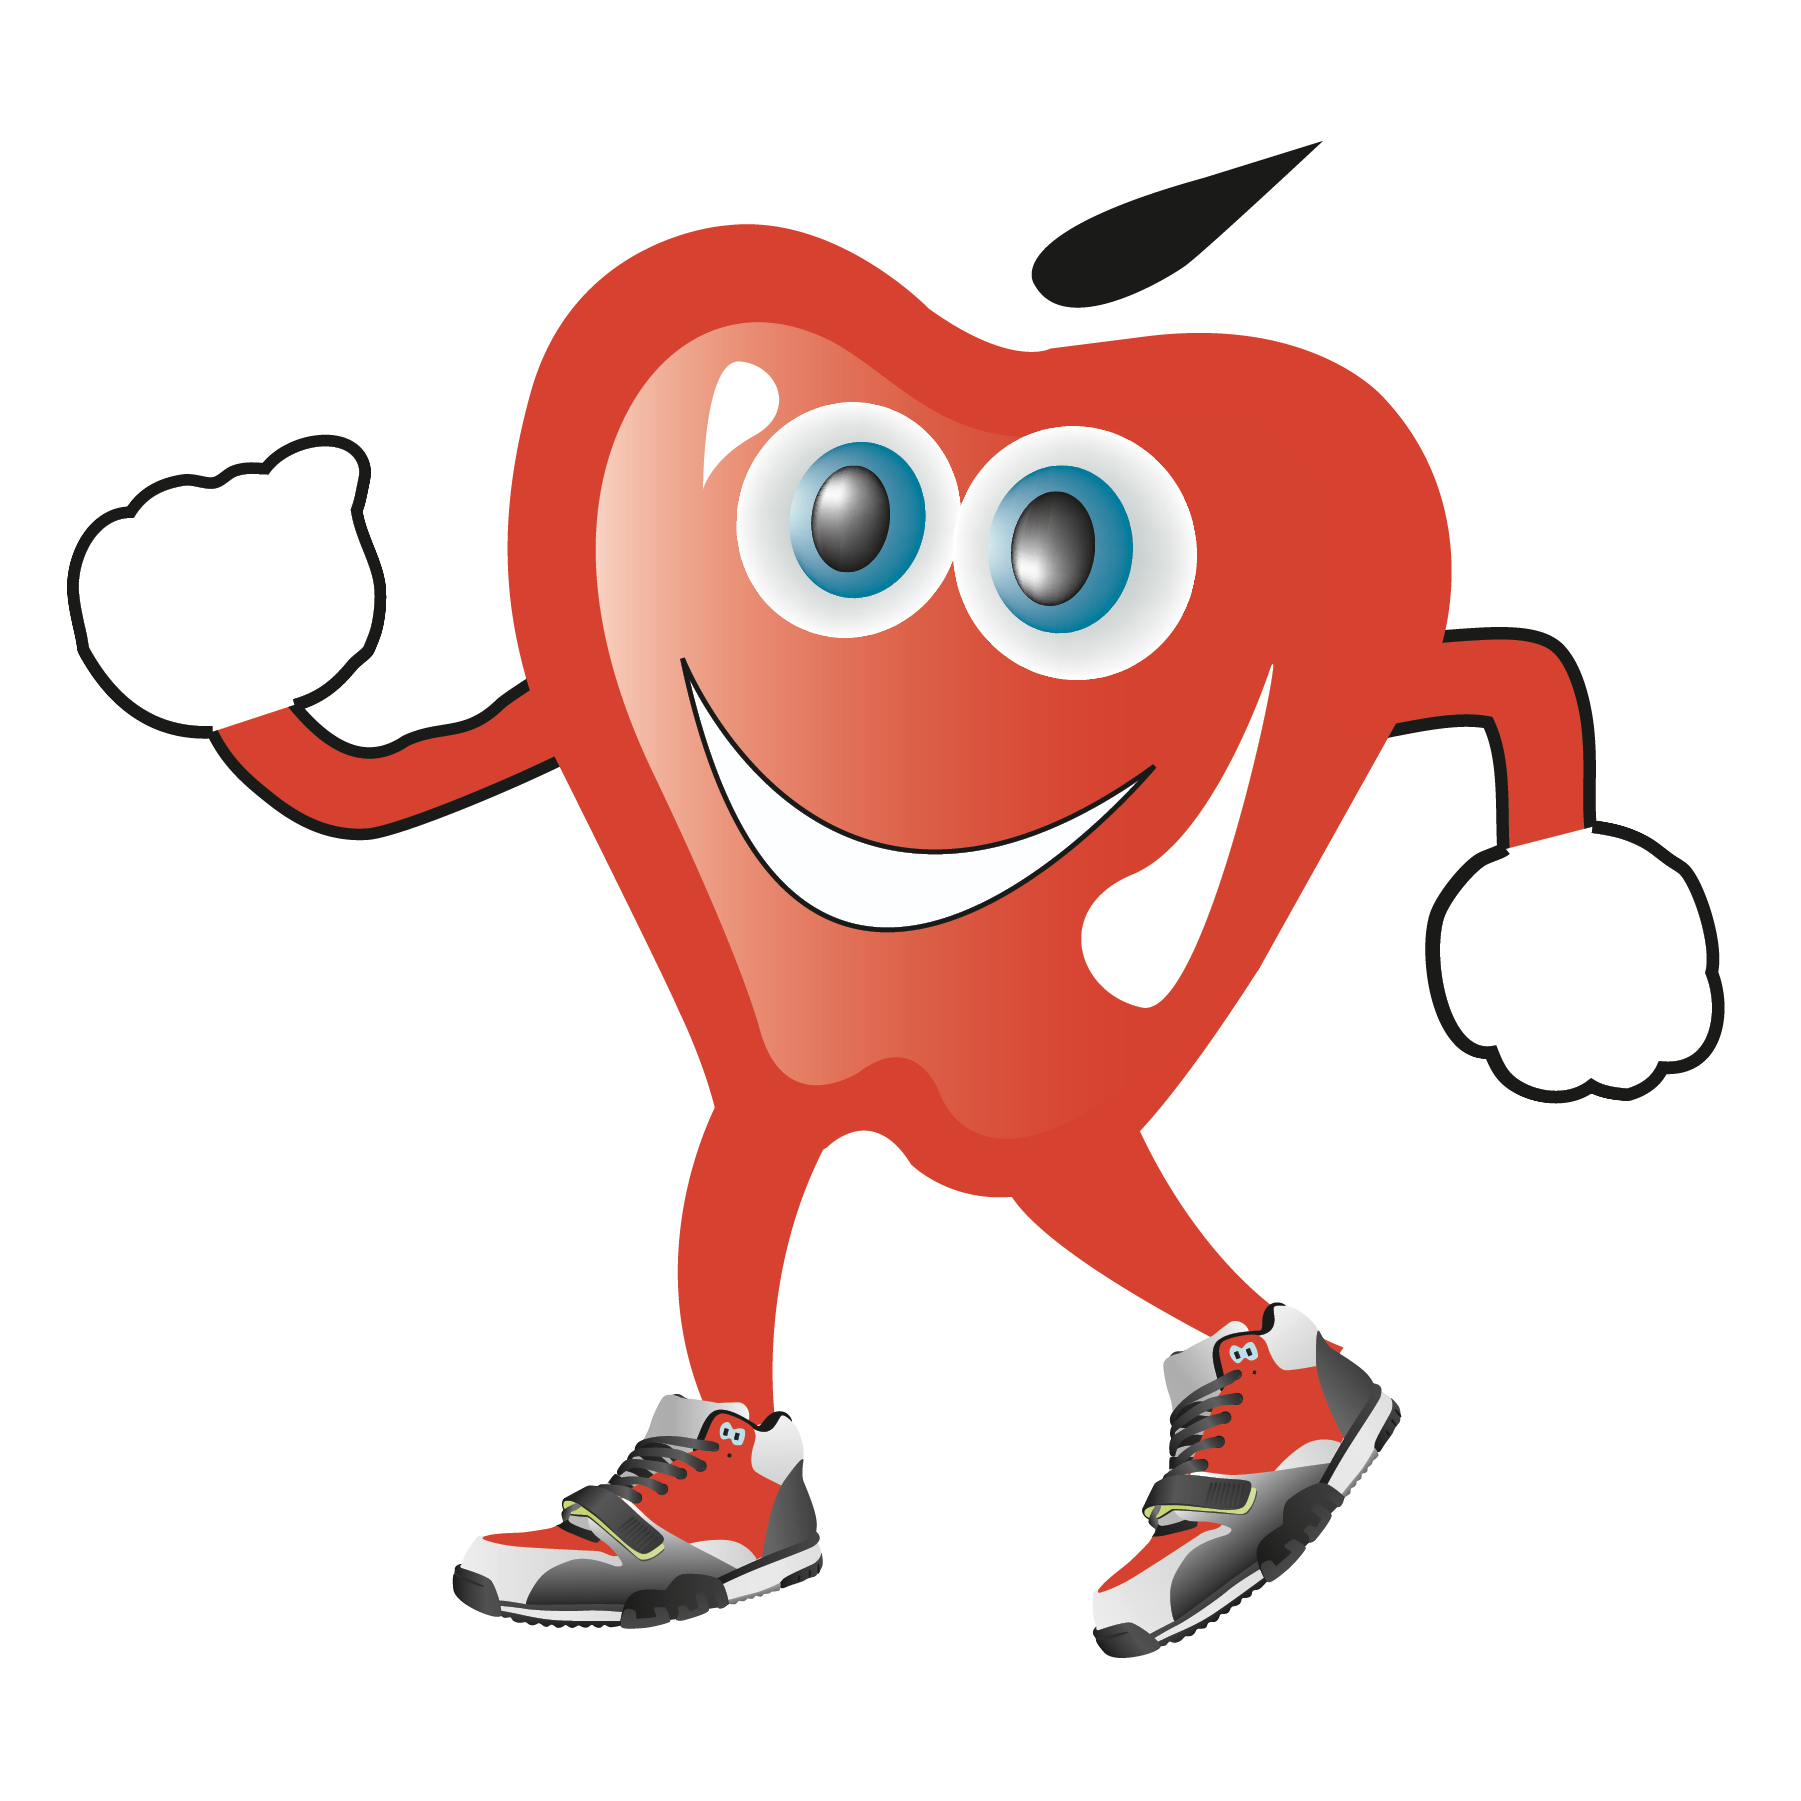 Red Apple Run for Diabetes logo on RaceRaves